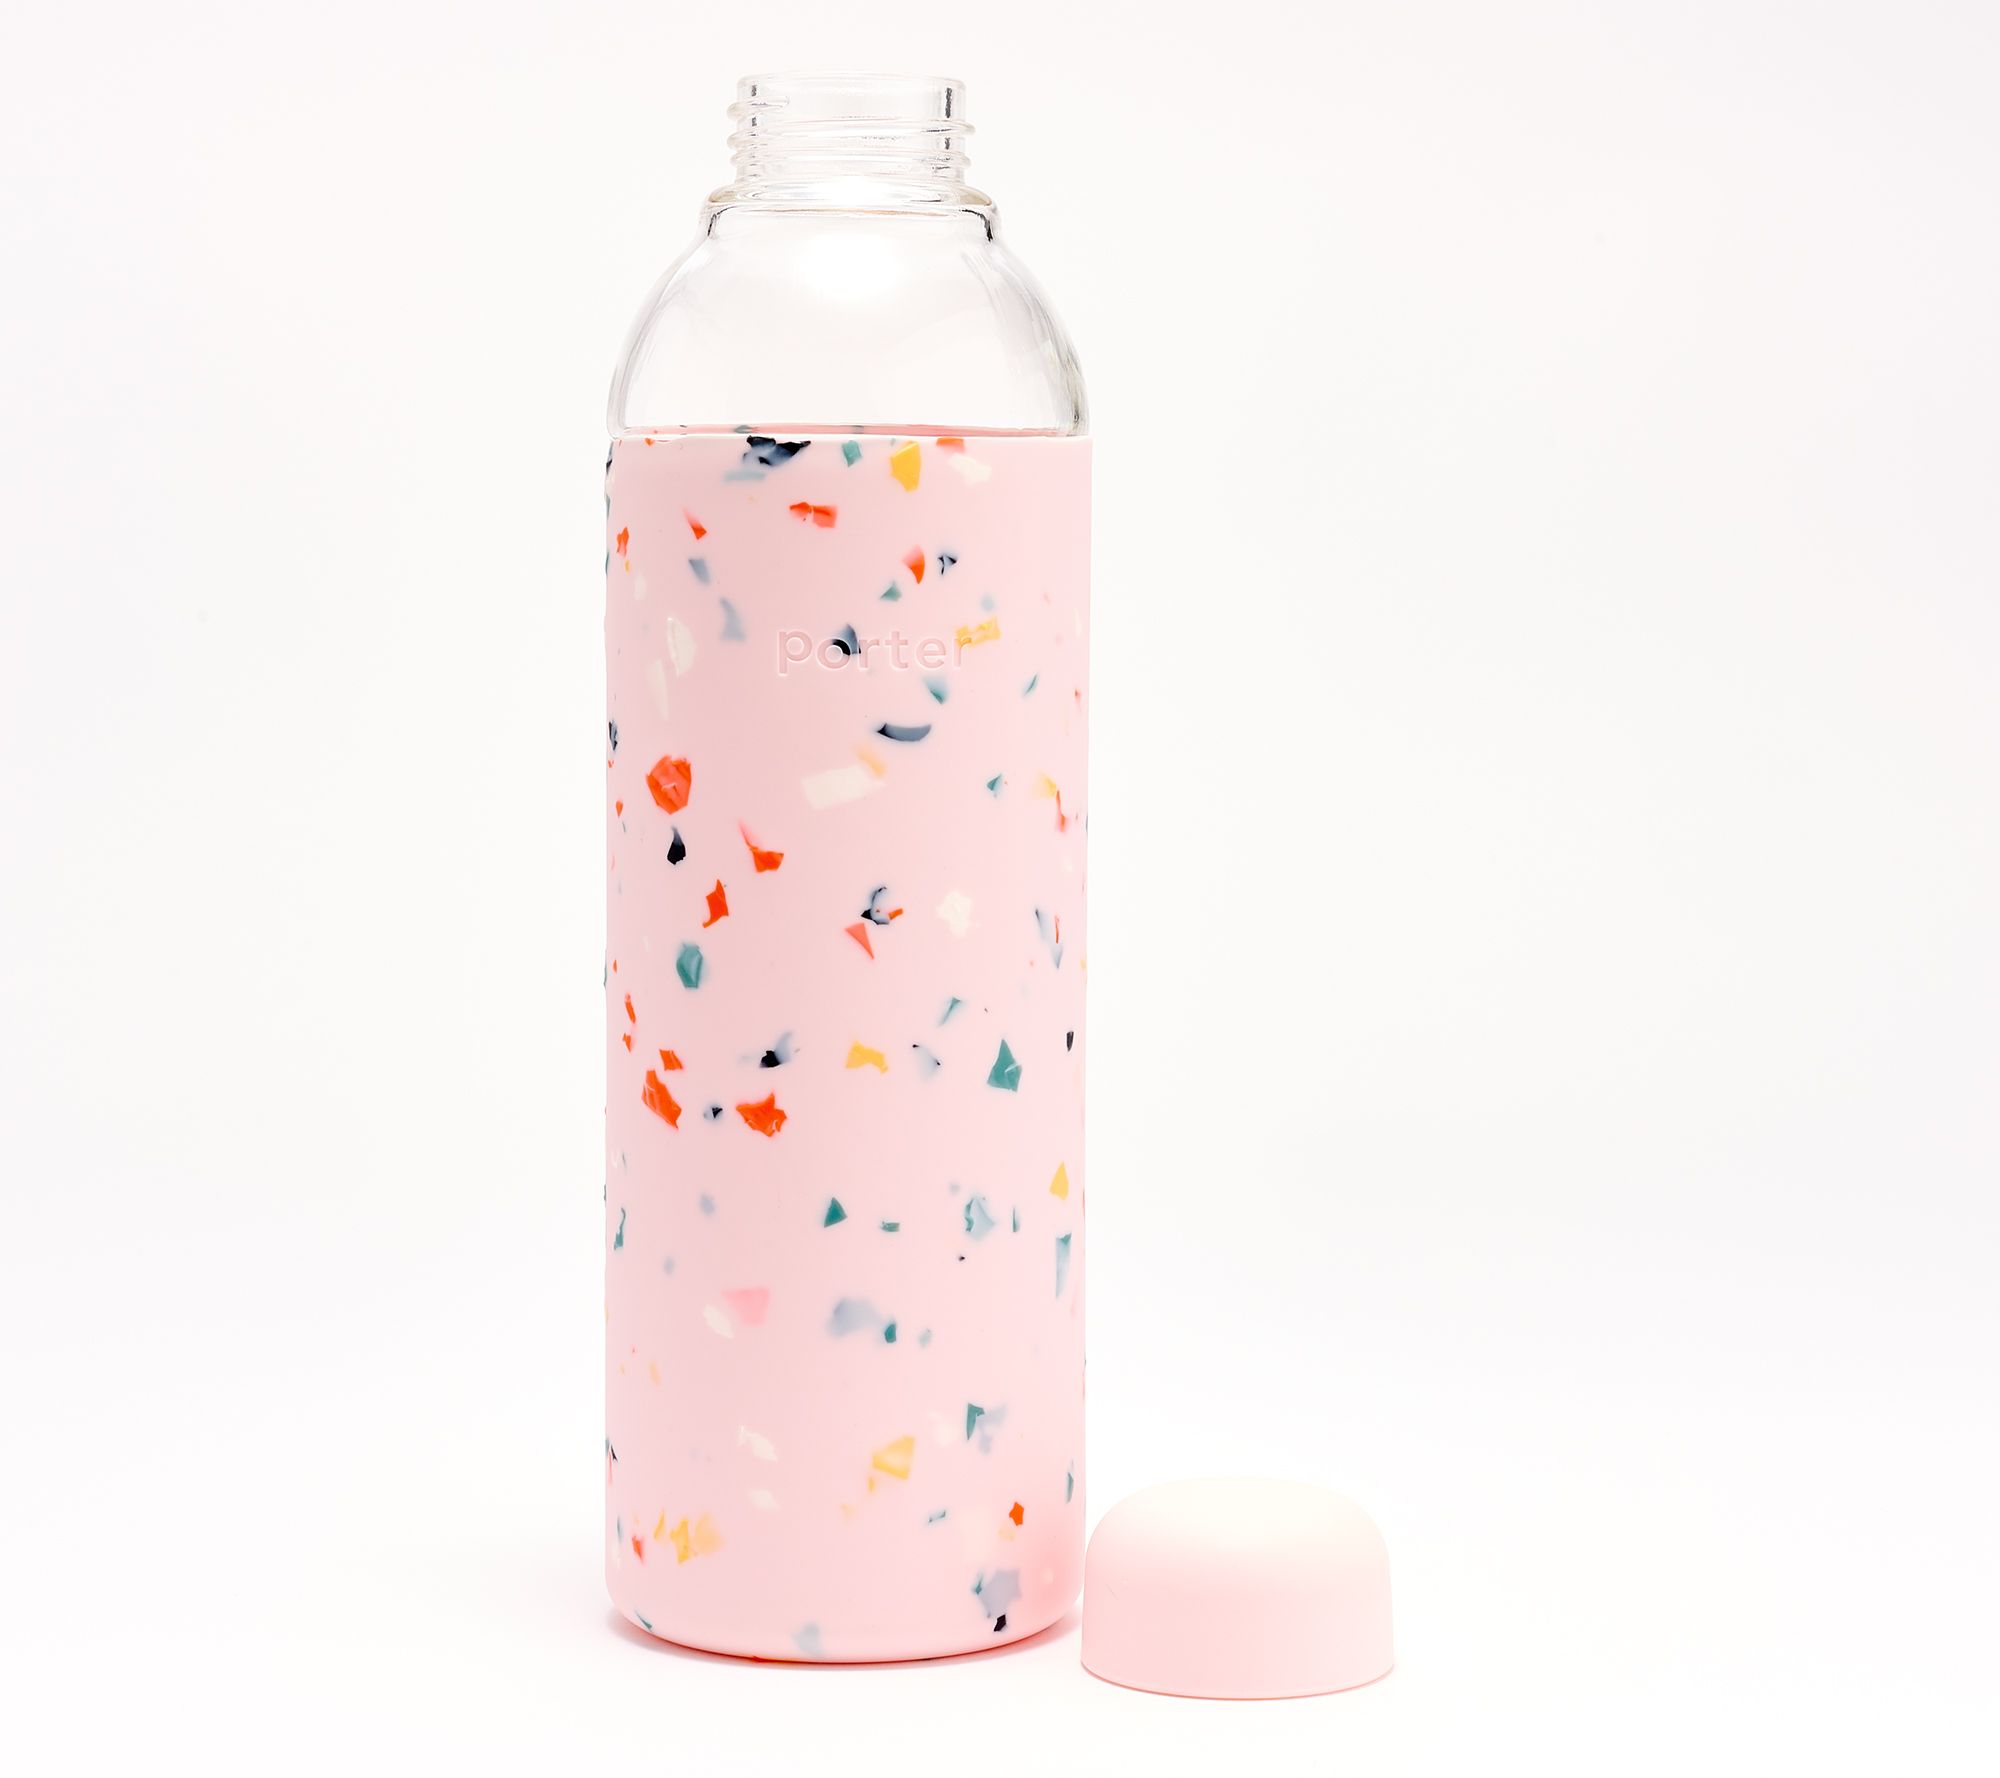 W&P Porter Insulated Bottle: Terrazzo_Blush